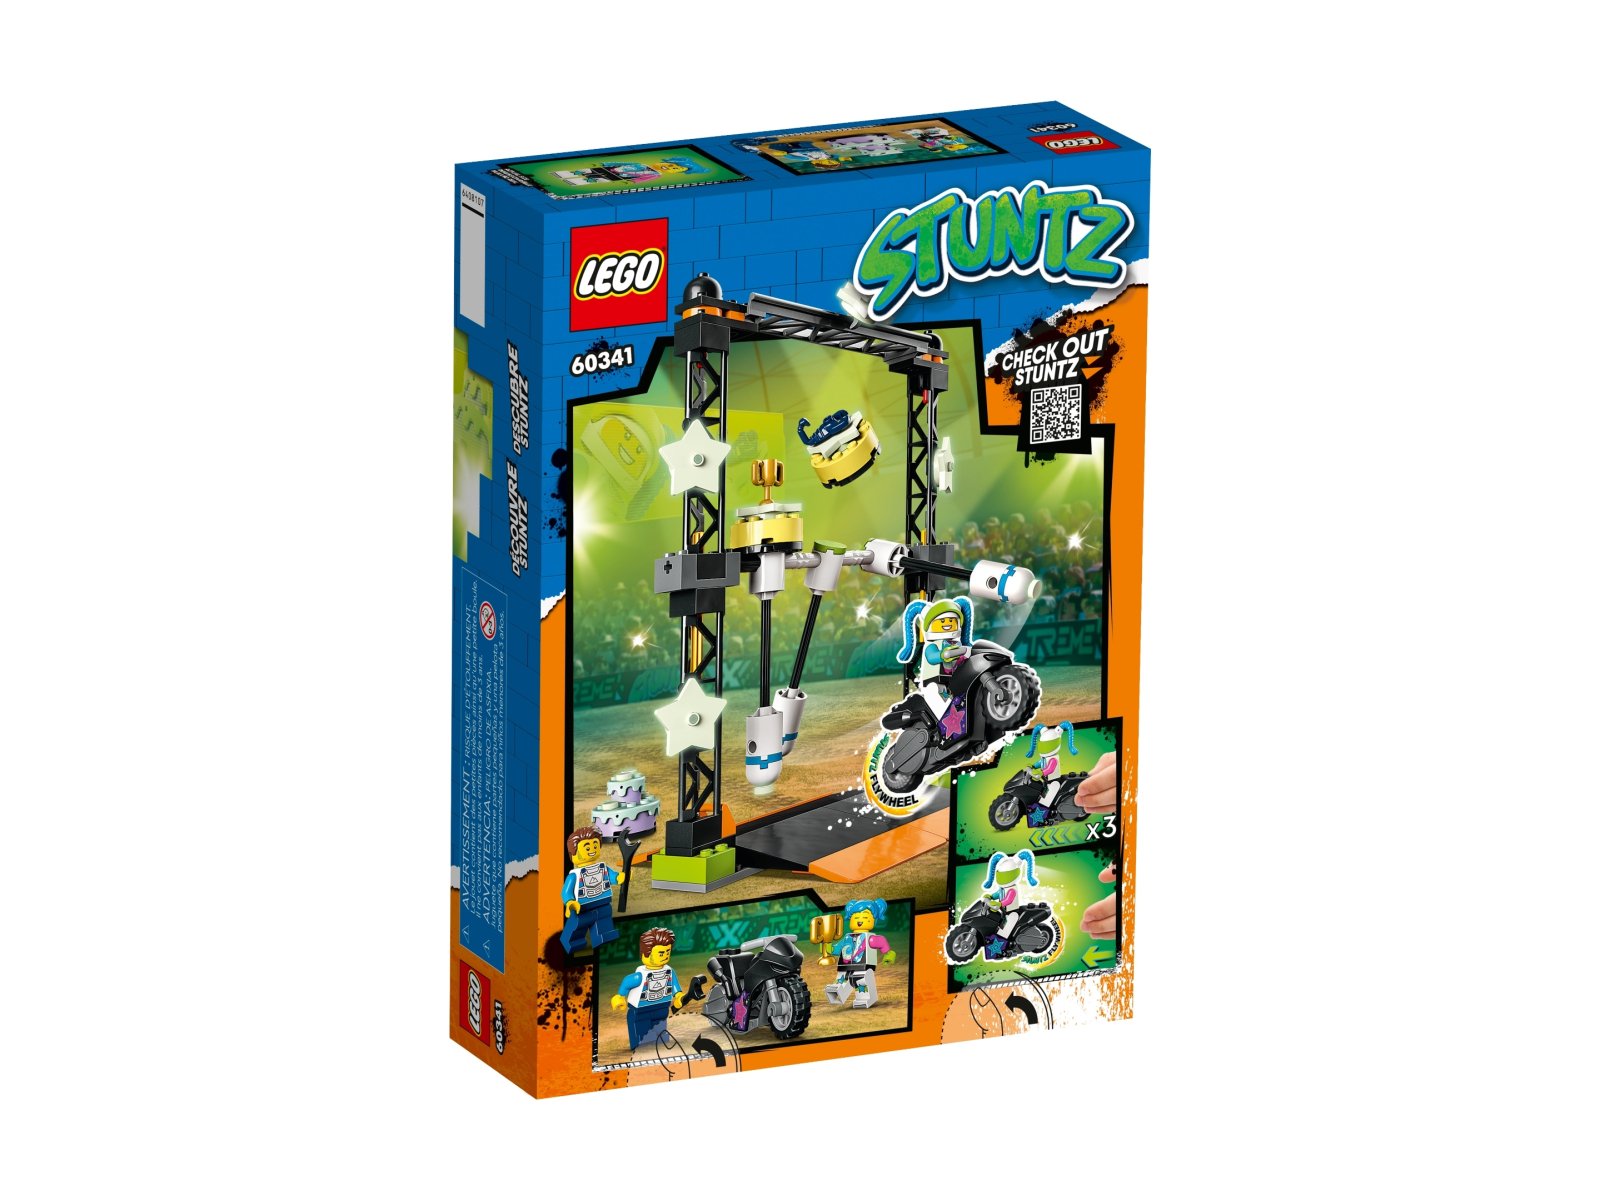 LEGO City 60341 Wyzwanie kaskaderskie: przewracanie